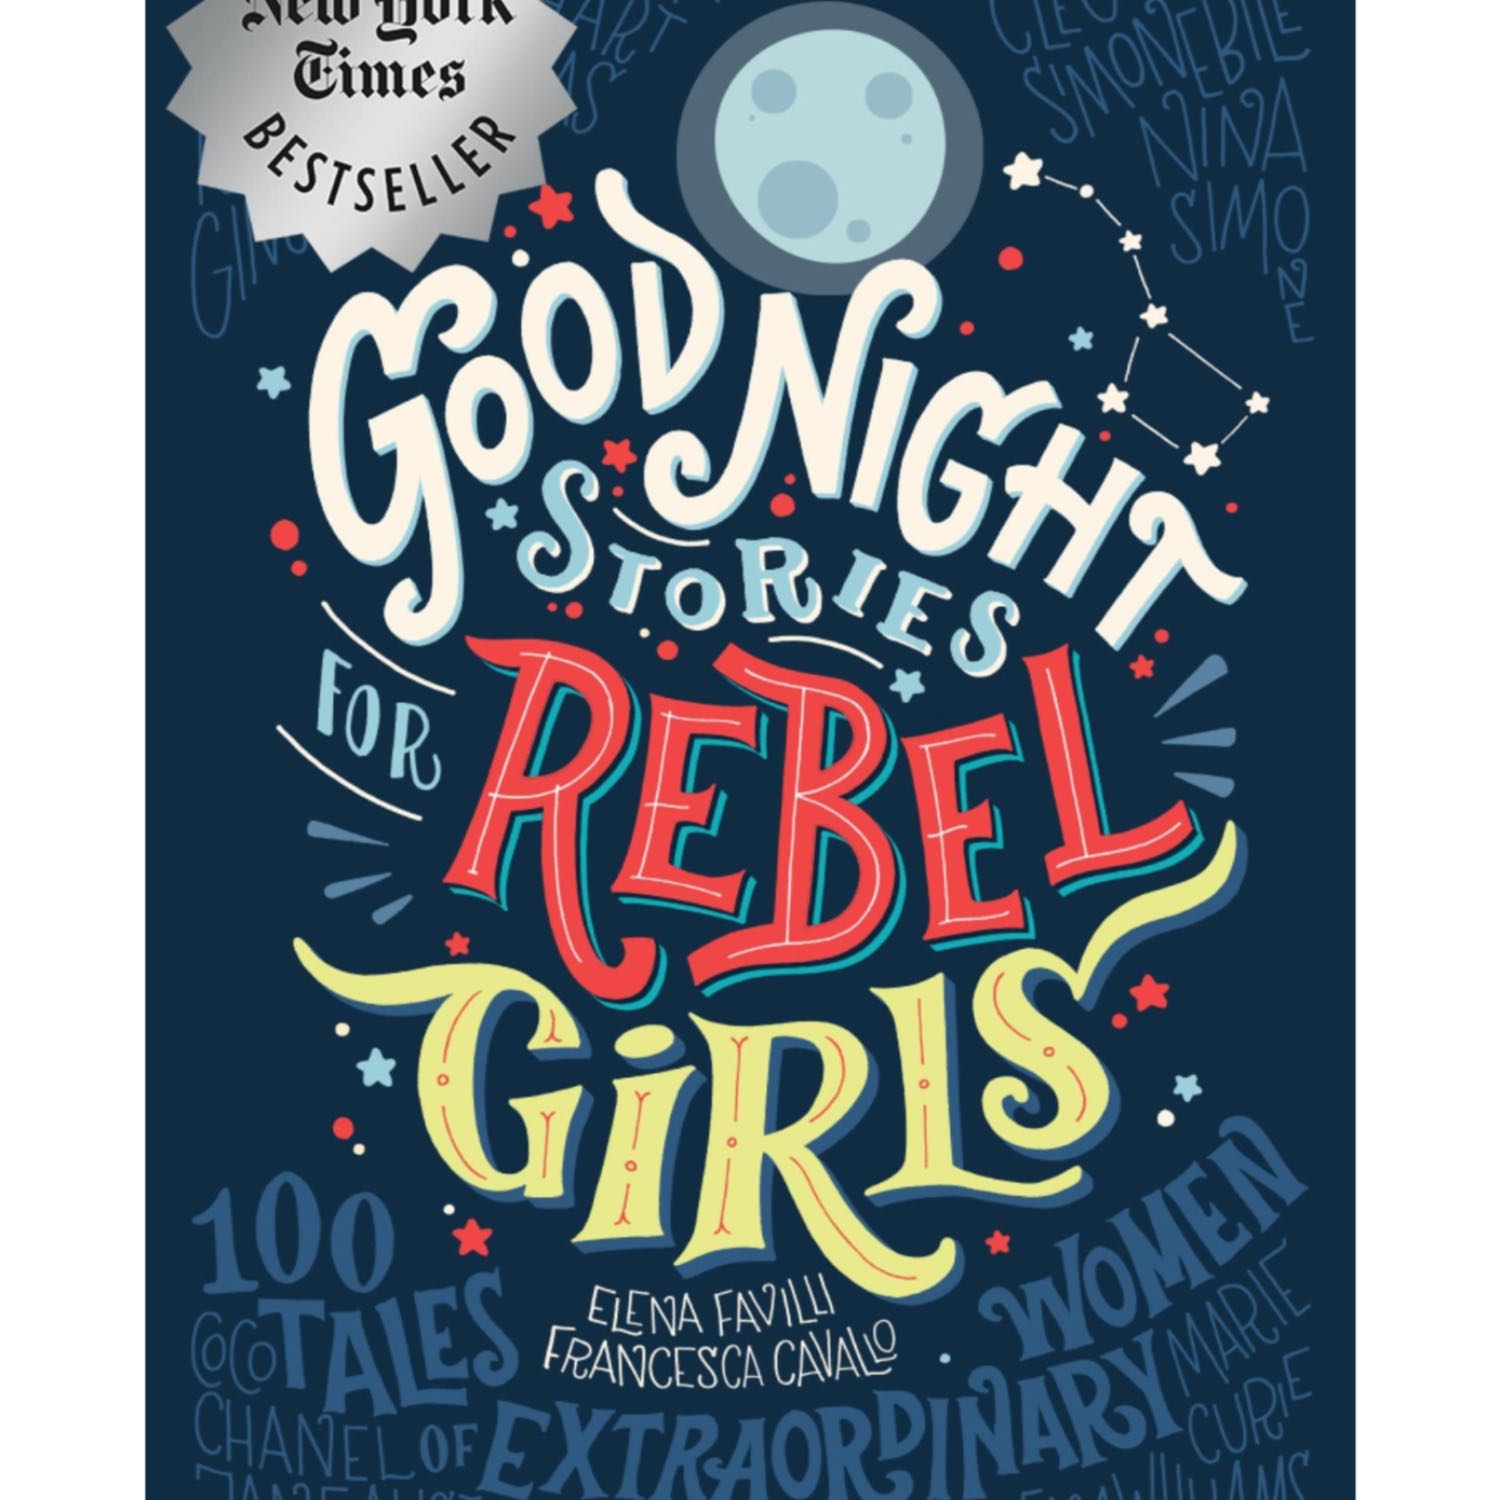 Goodnight Stories Rebel Stories: Nina Simone